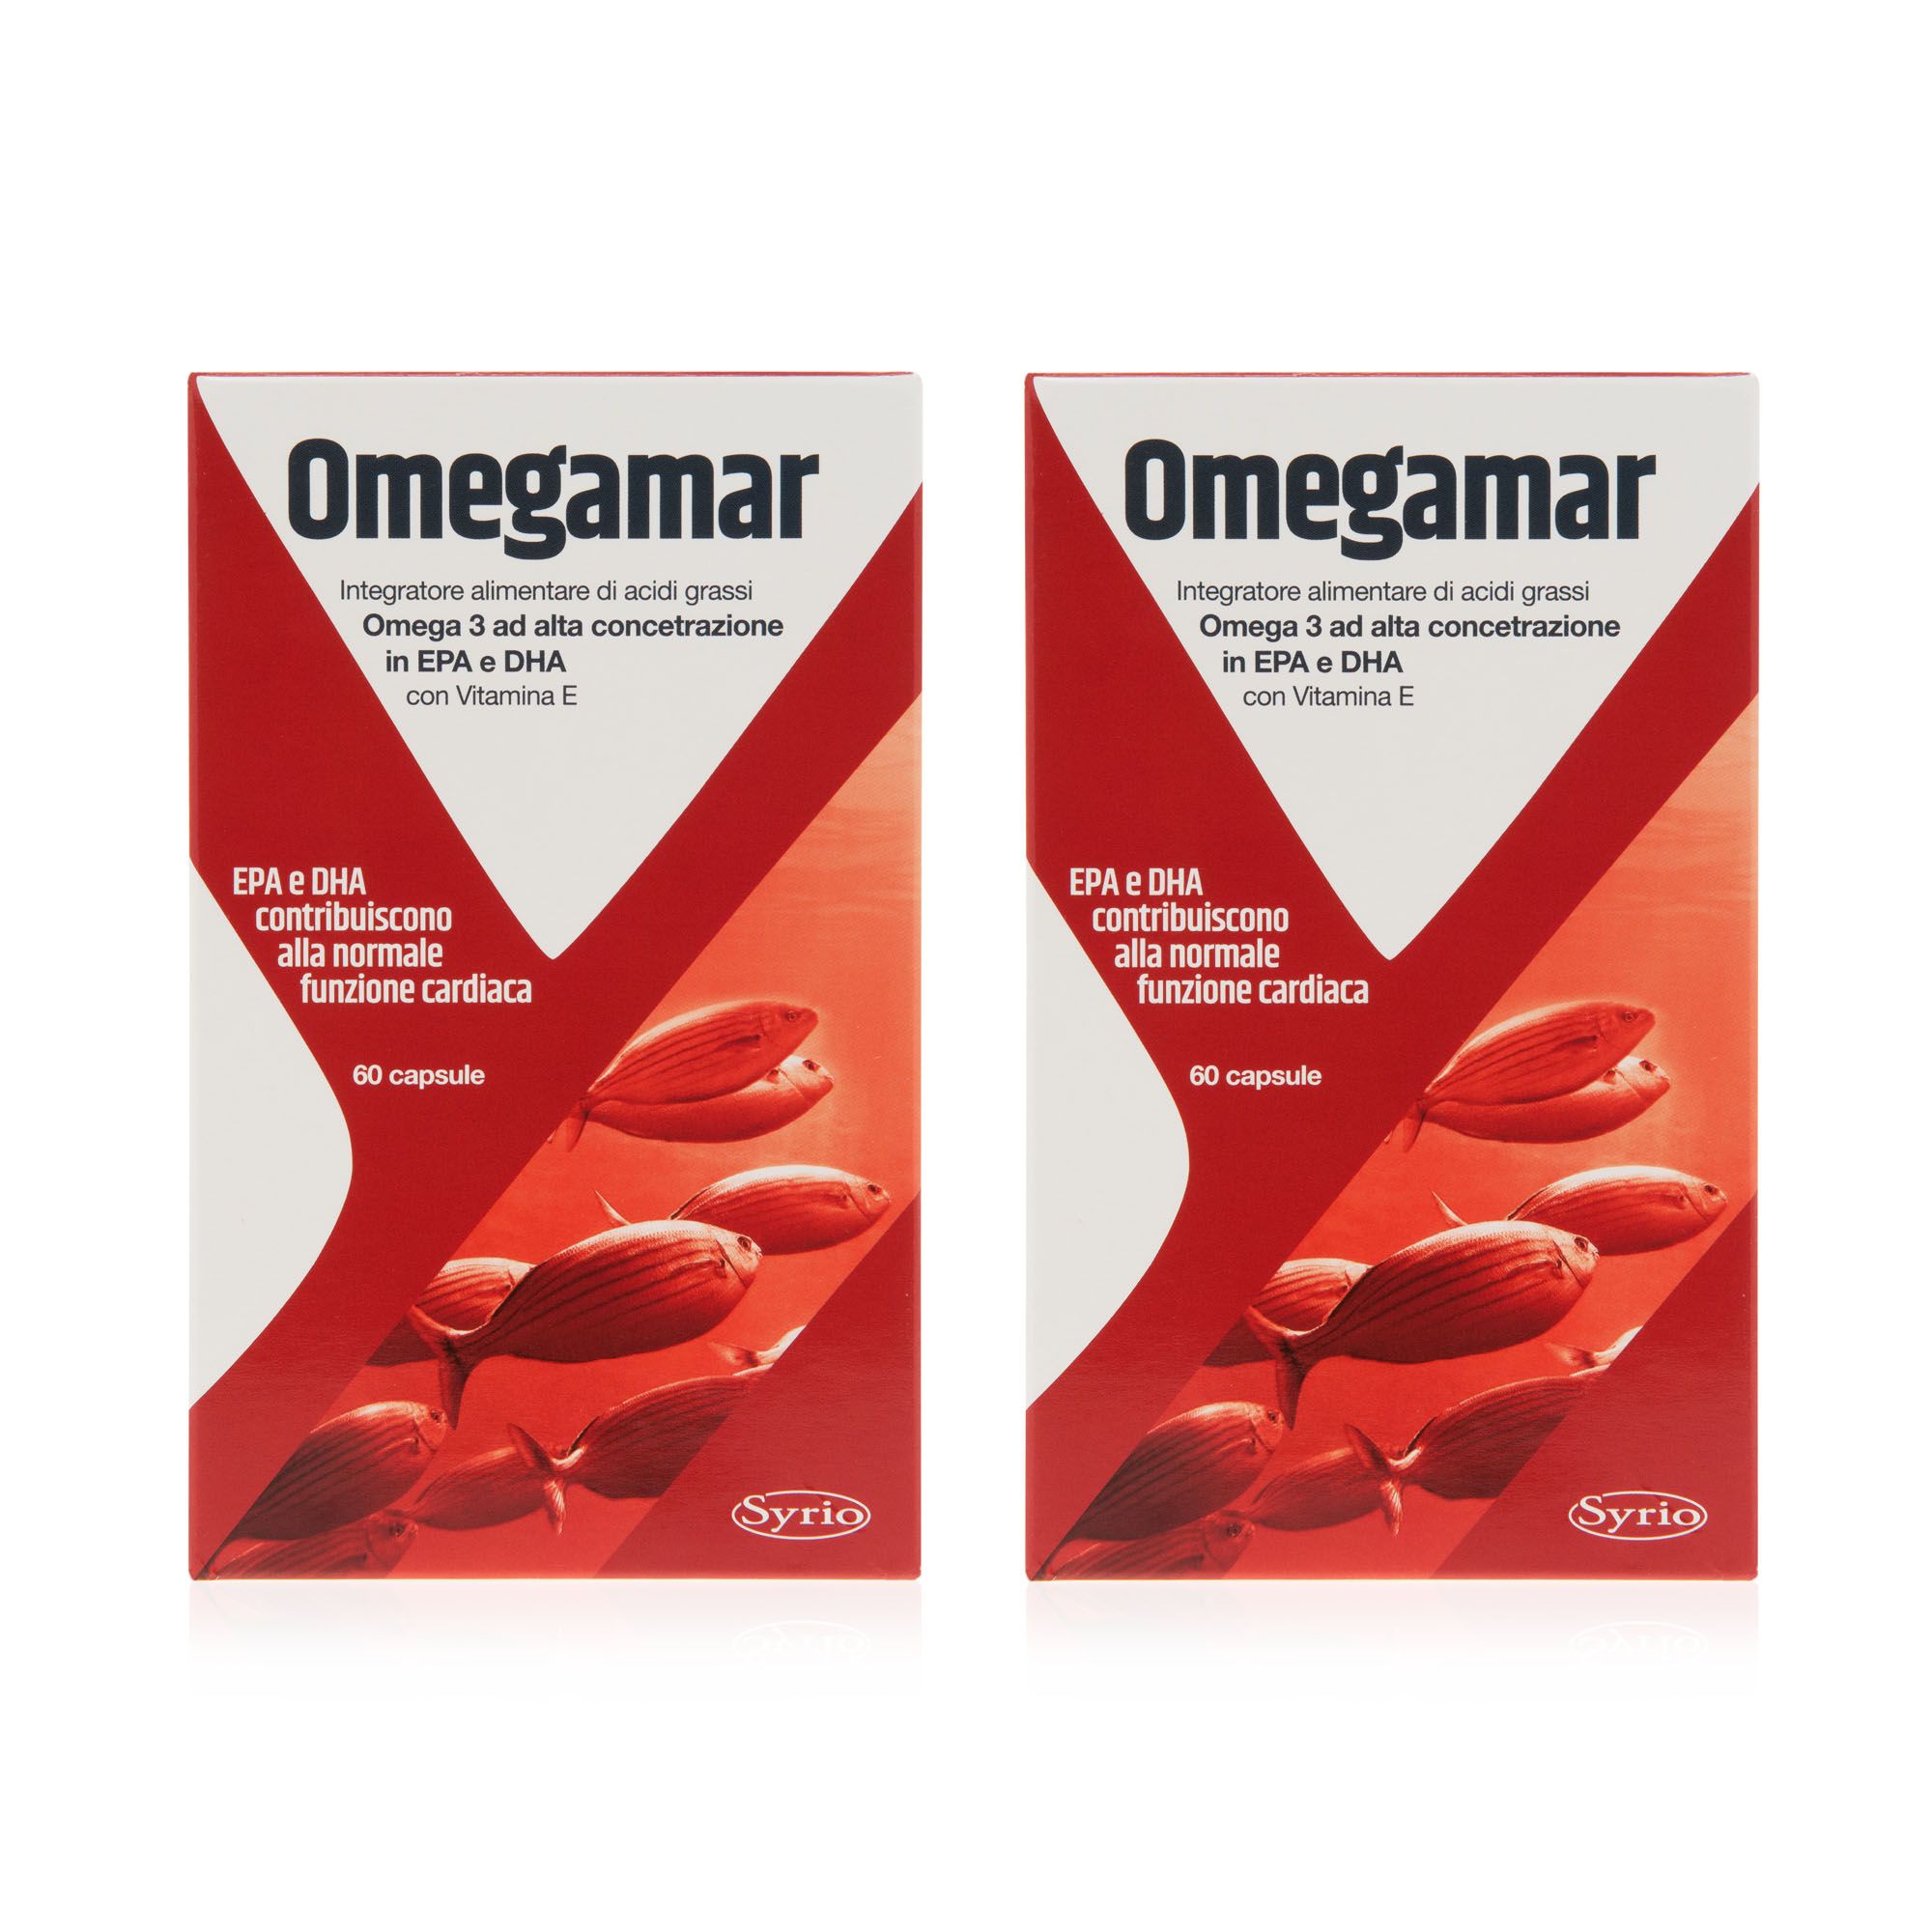 Image of Omegamar integratore alimentare ricco di omega 3 (2 pz)